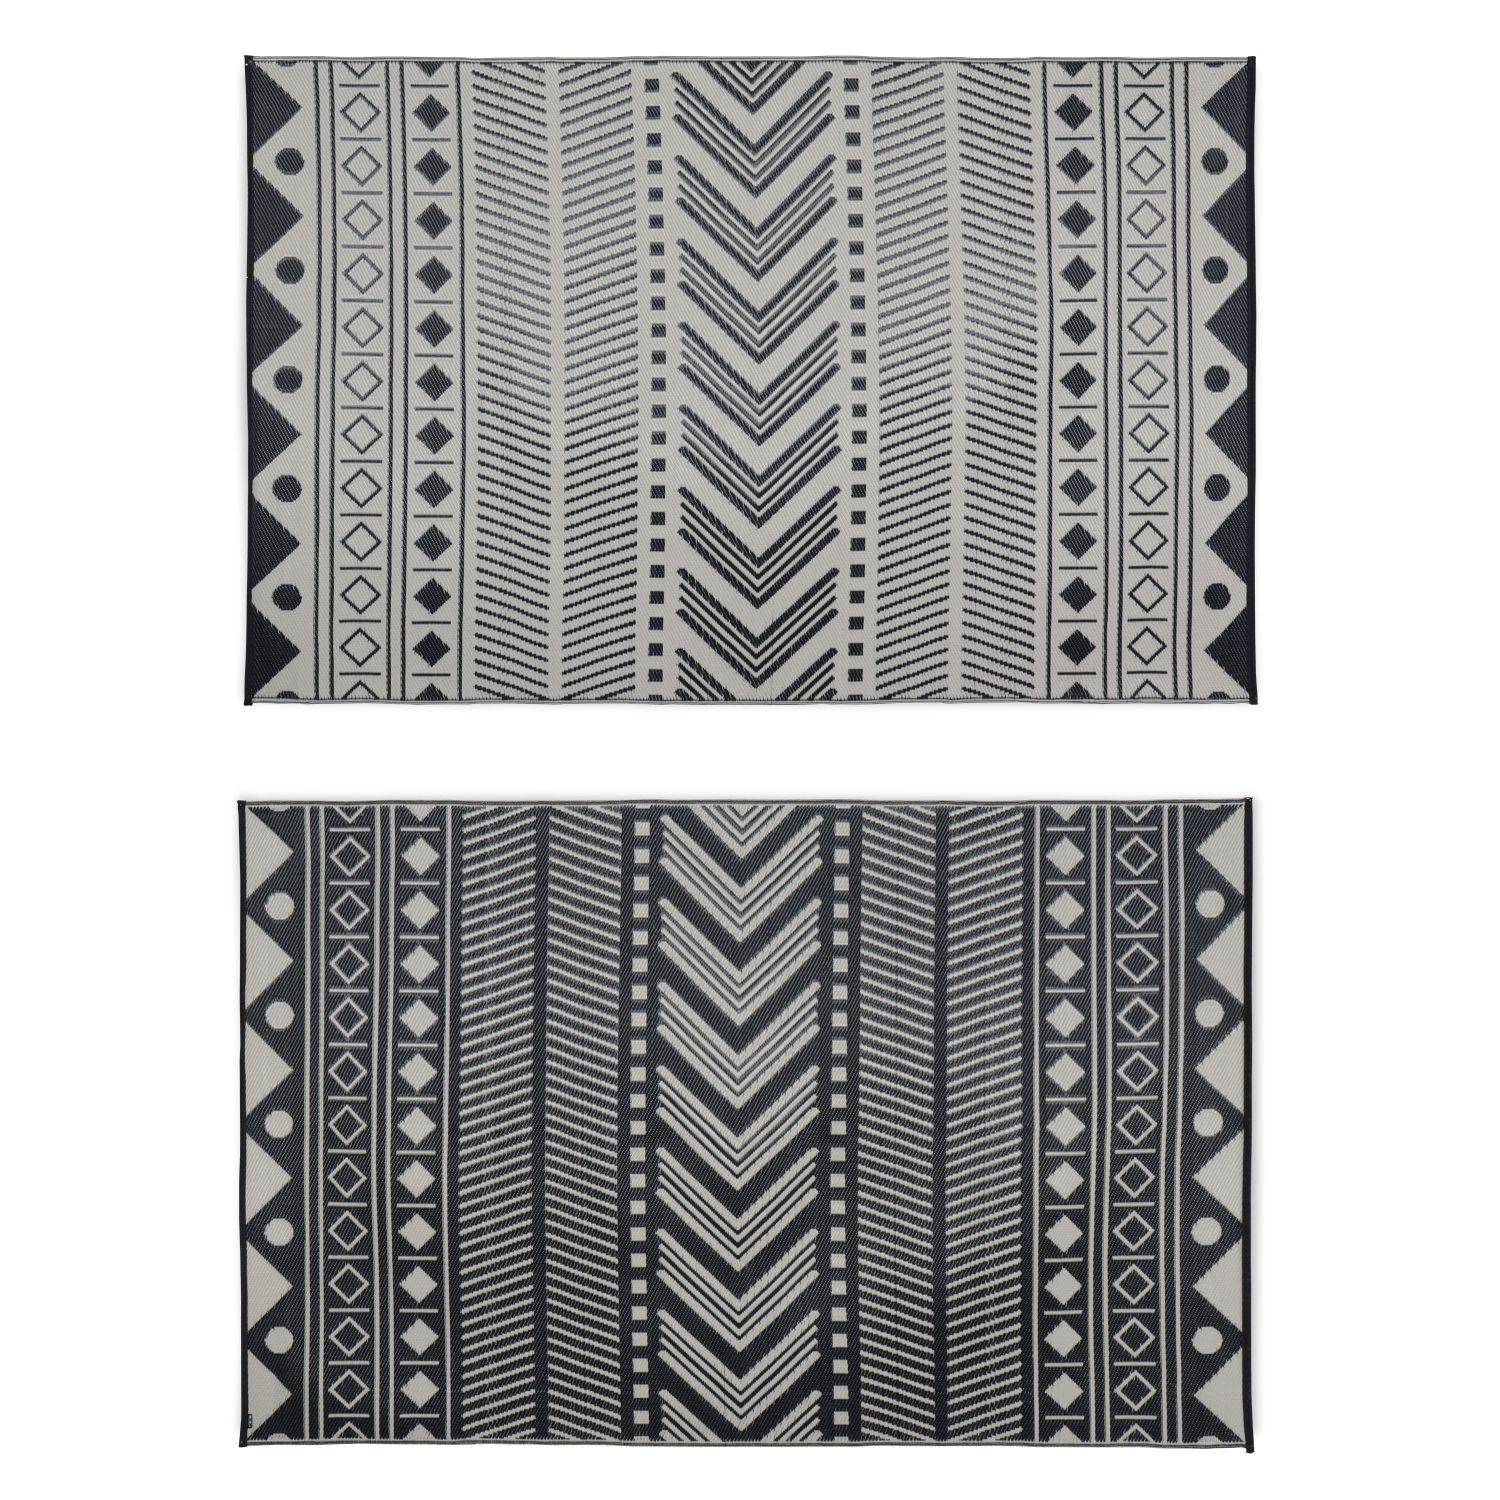 Outdoor rug - 180x270cm - Jacquard, reversible, rectangular, indoor/outdoor use - Bamako - Black-beige Photo2